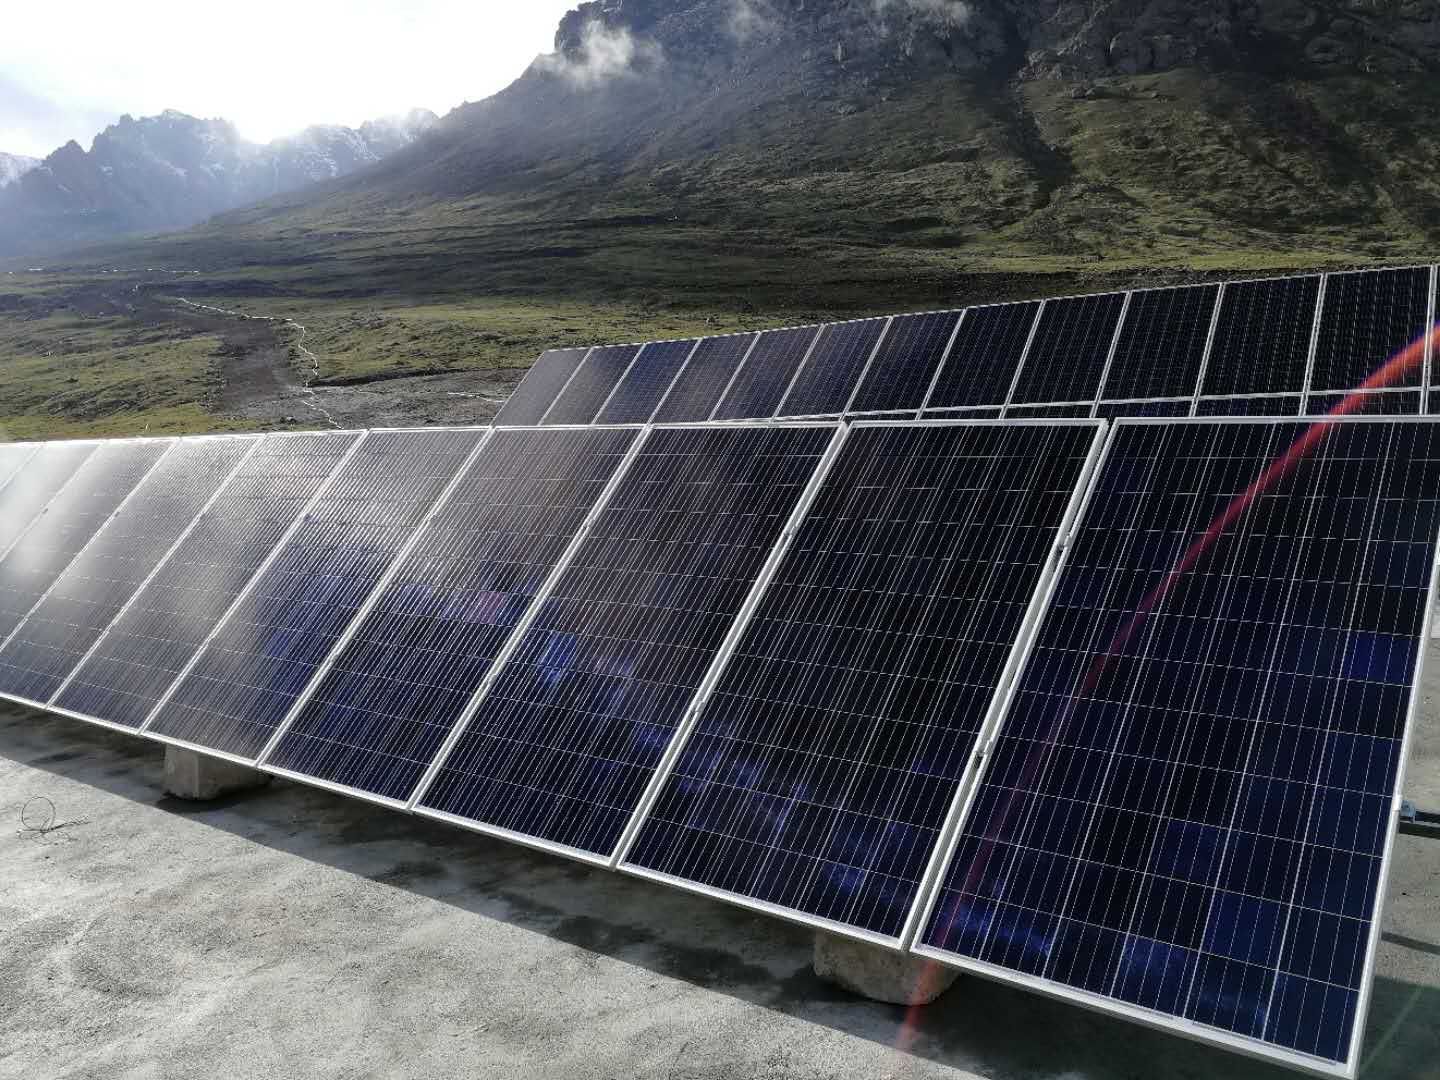 2018年6月26日，由弘德科技承建的新疆一号冰川40KW离网储能电站调试运行成功，为当地老百姓带去清洁可再生能源电力。